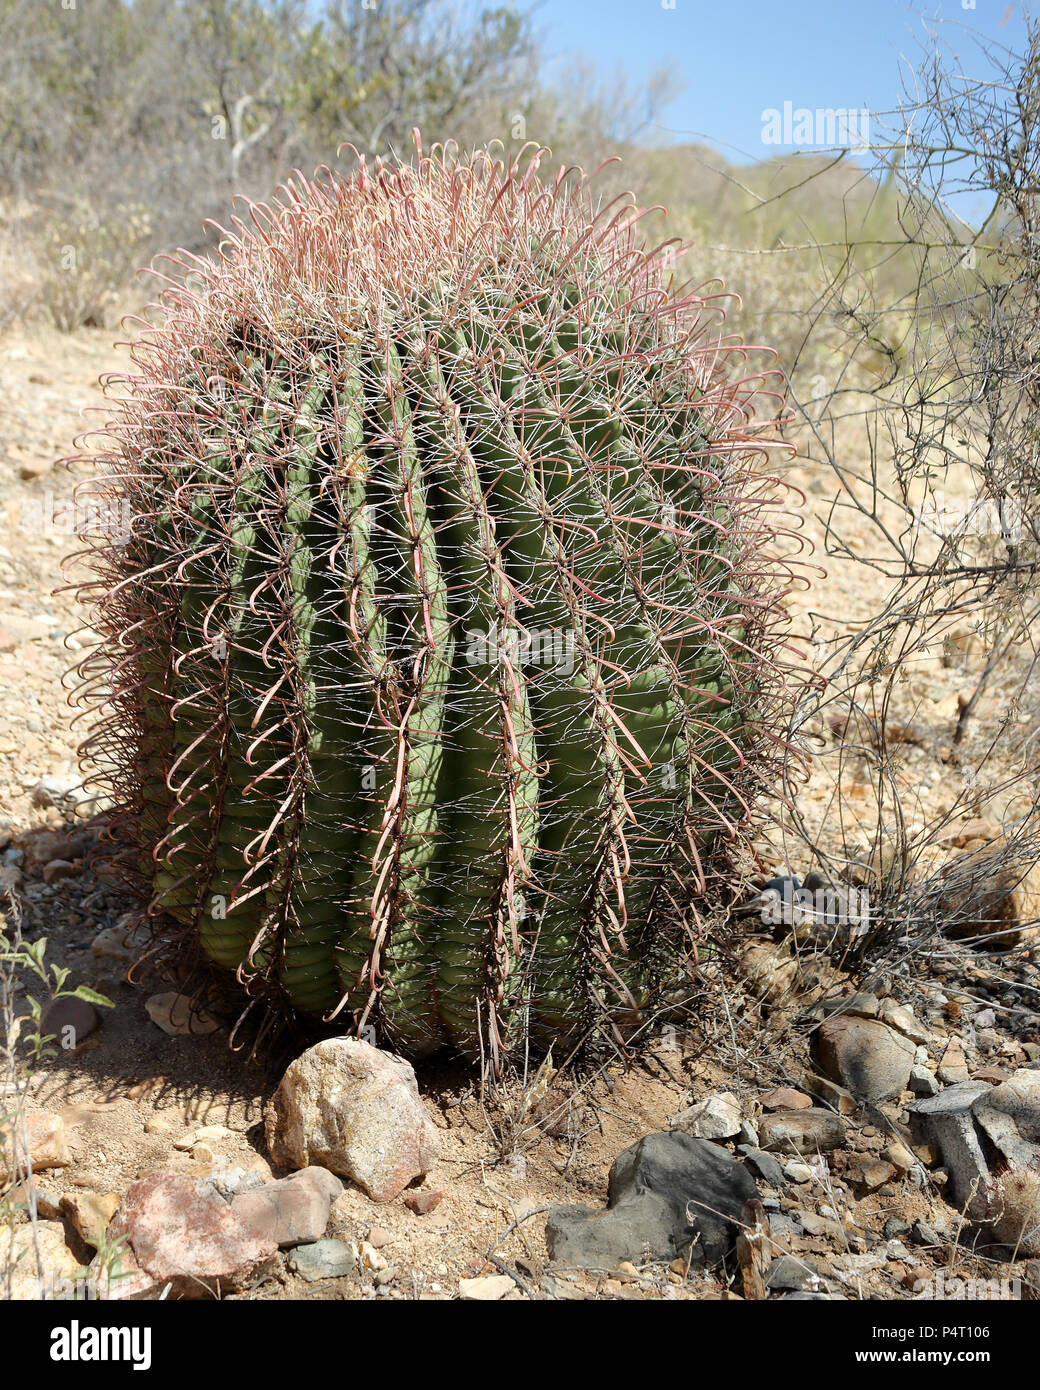 Chiudere la vista di un giovane cactus Saguaro nel sud Arizona Deserto Sonoran in una giornata di sole Foto Stock